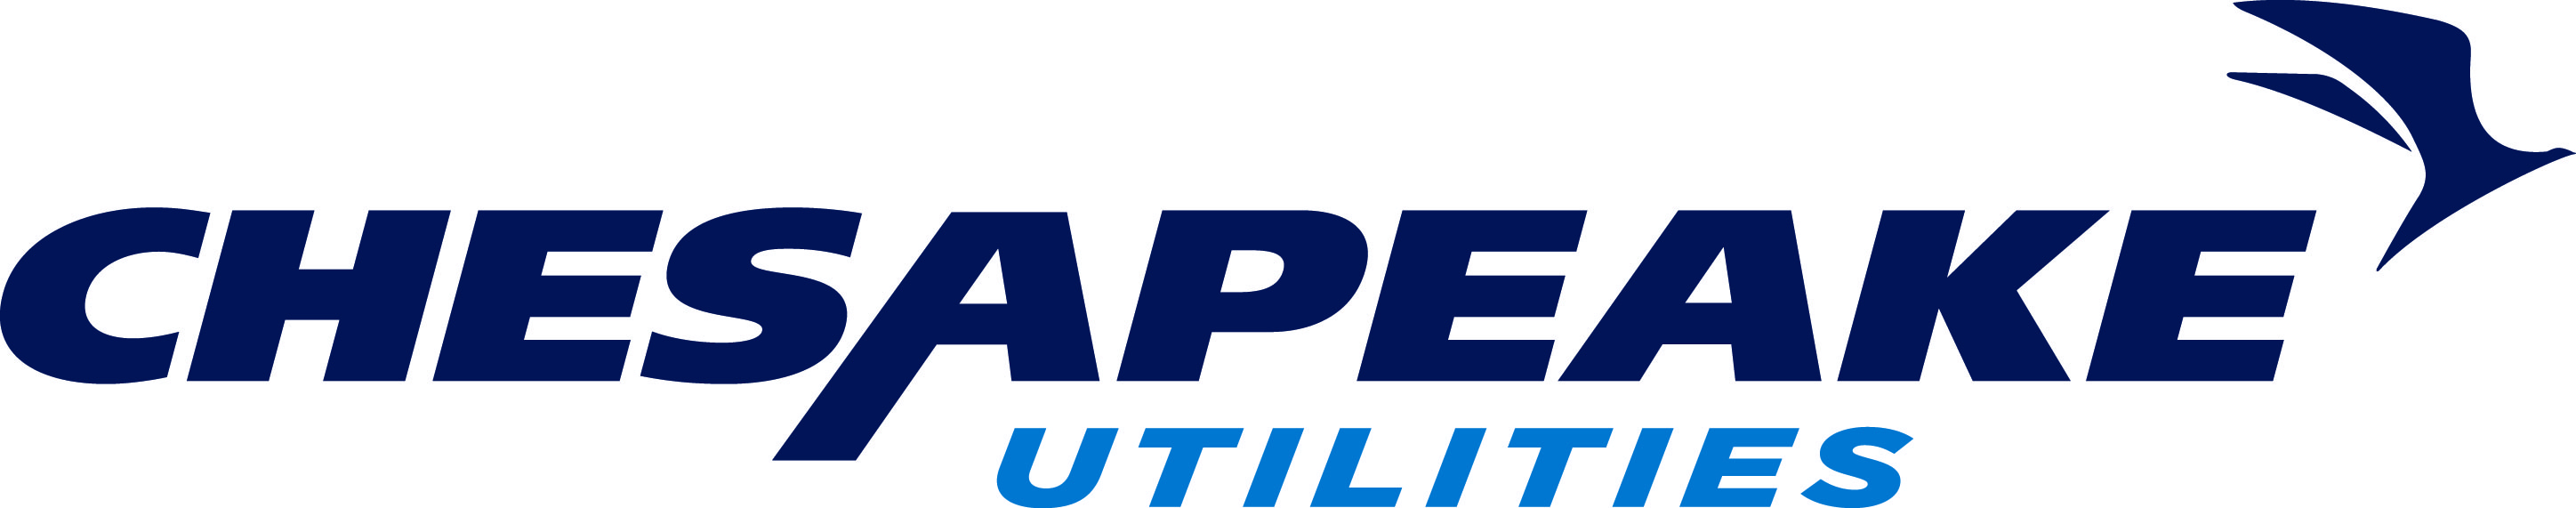 Chesapeake Utilities Corp.